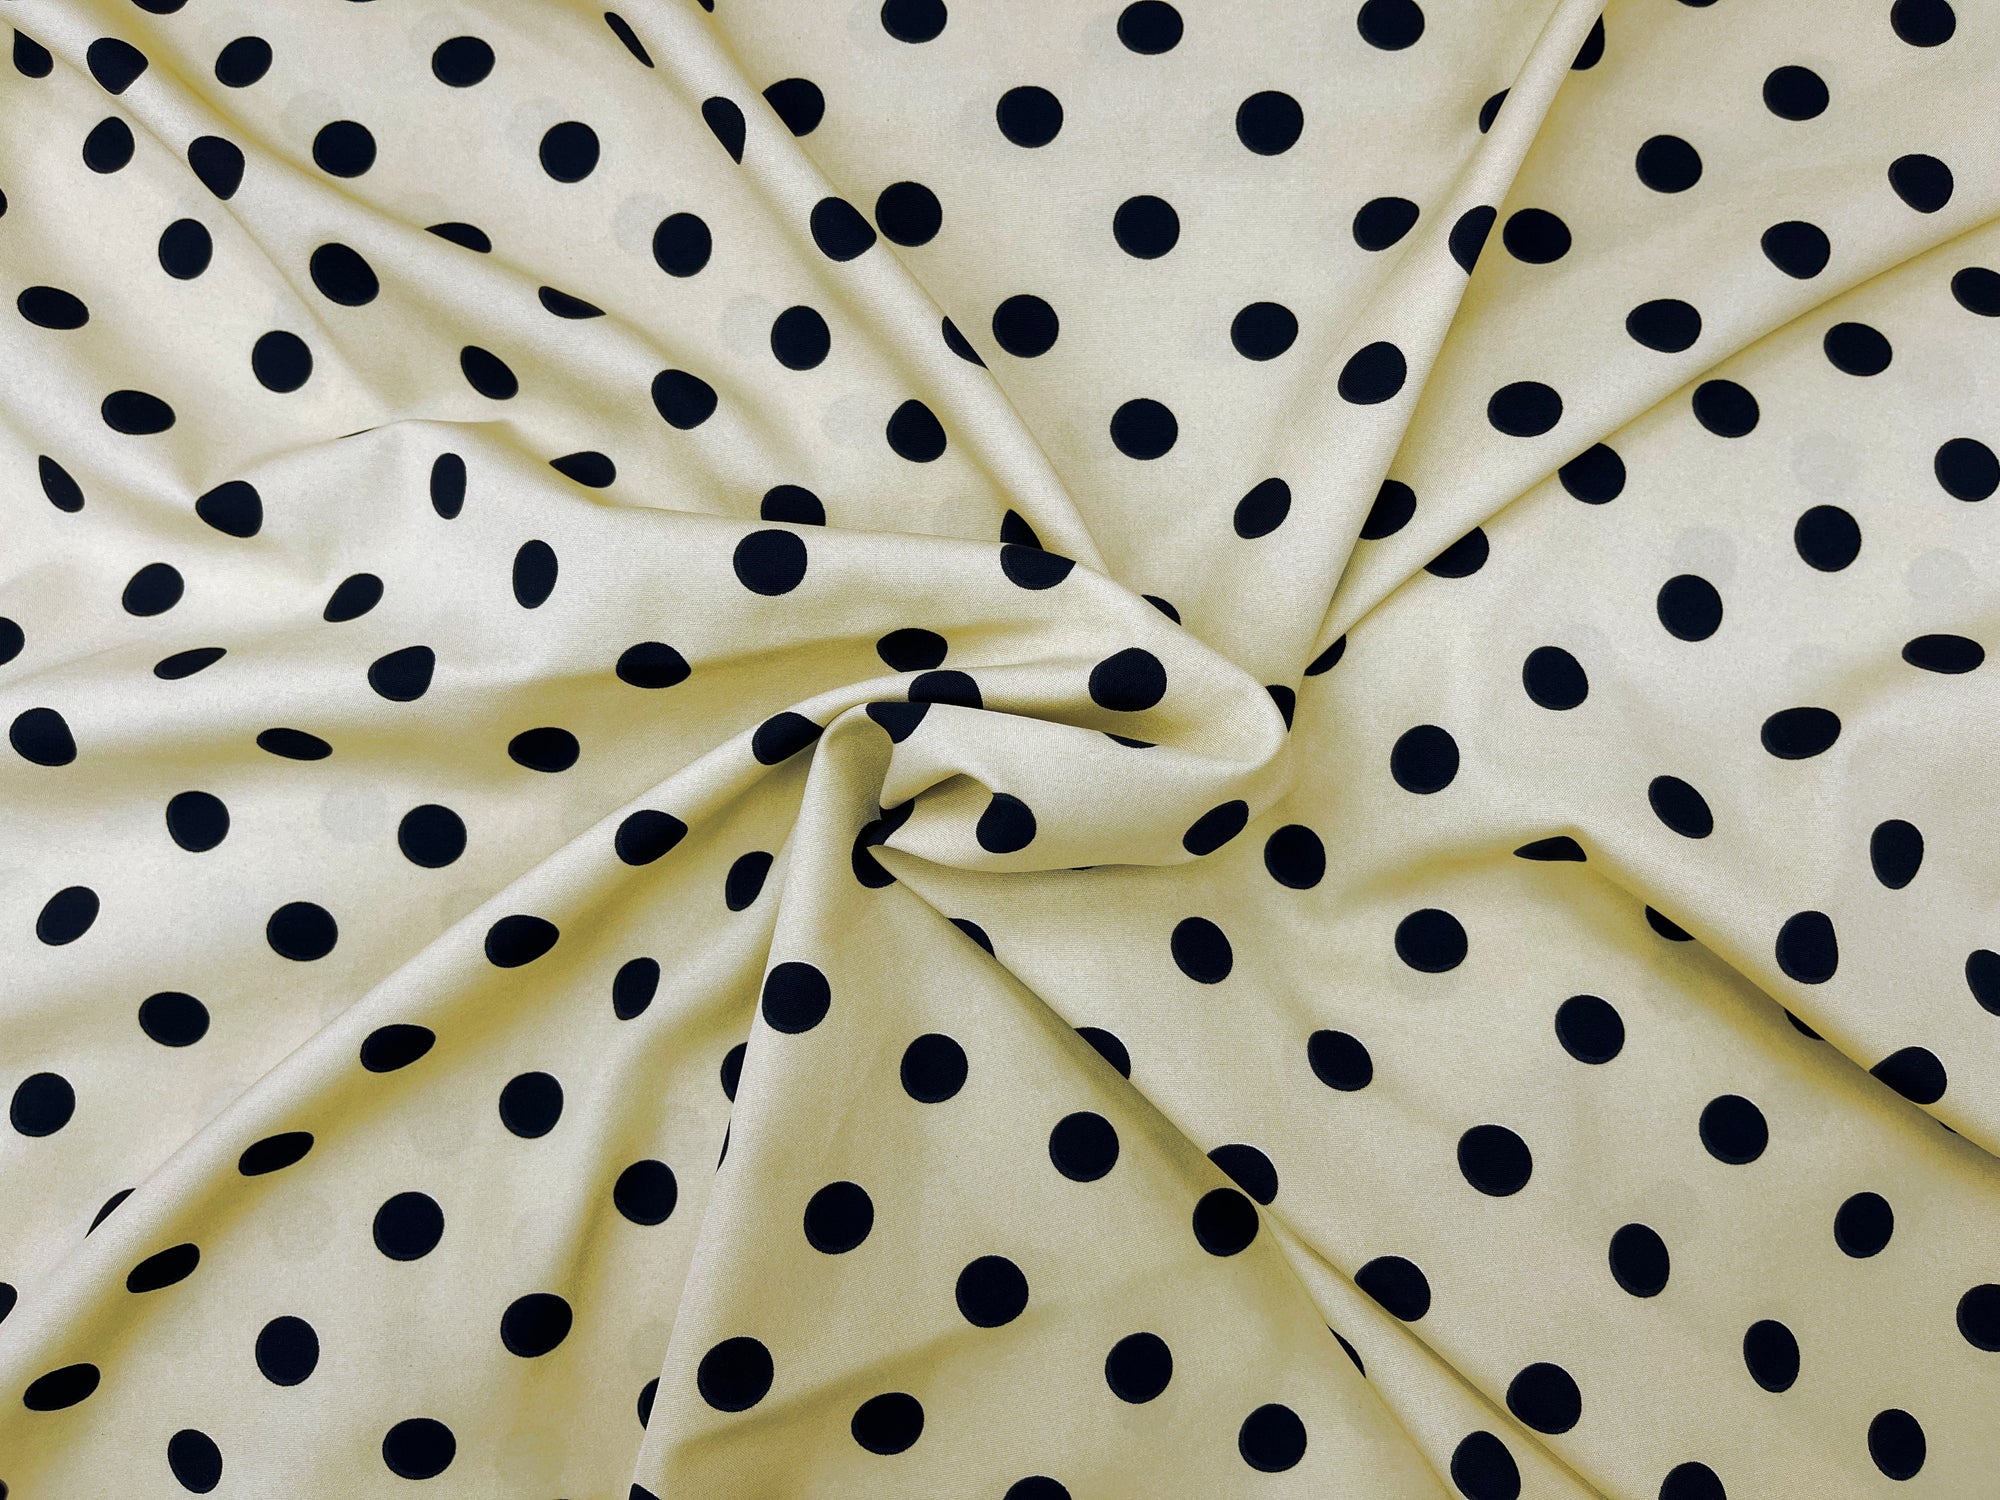 14mm Polka Dots - Printed Crepe Fabric